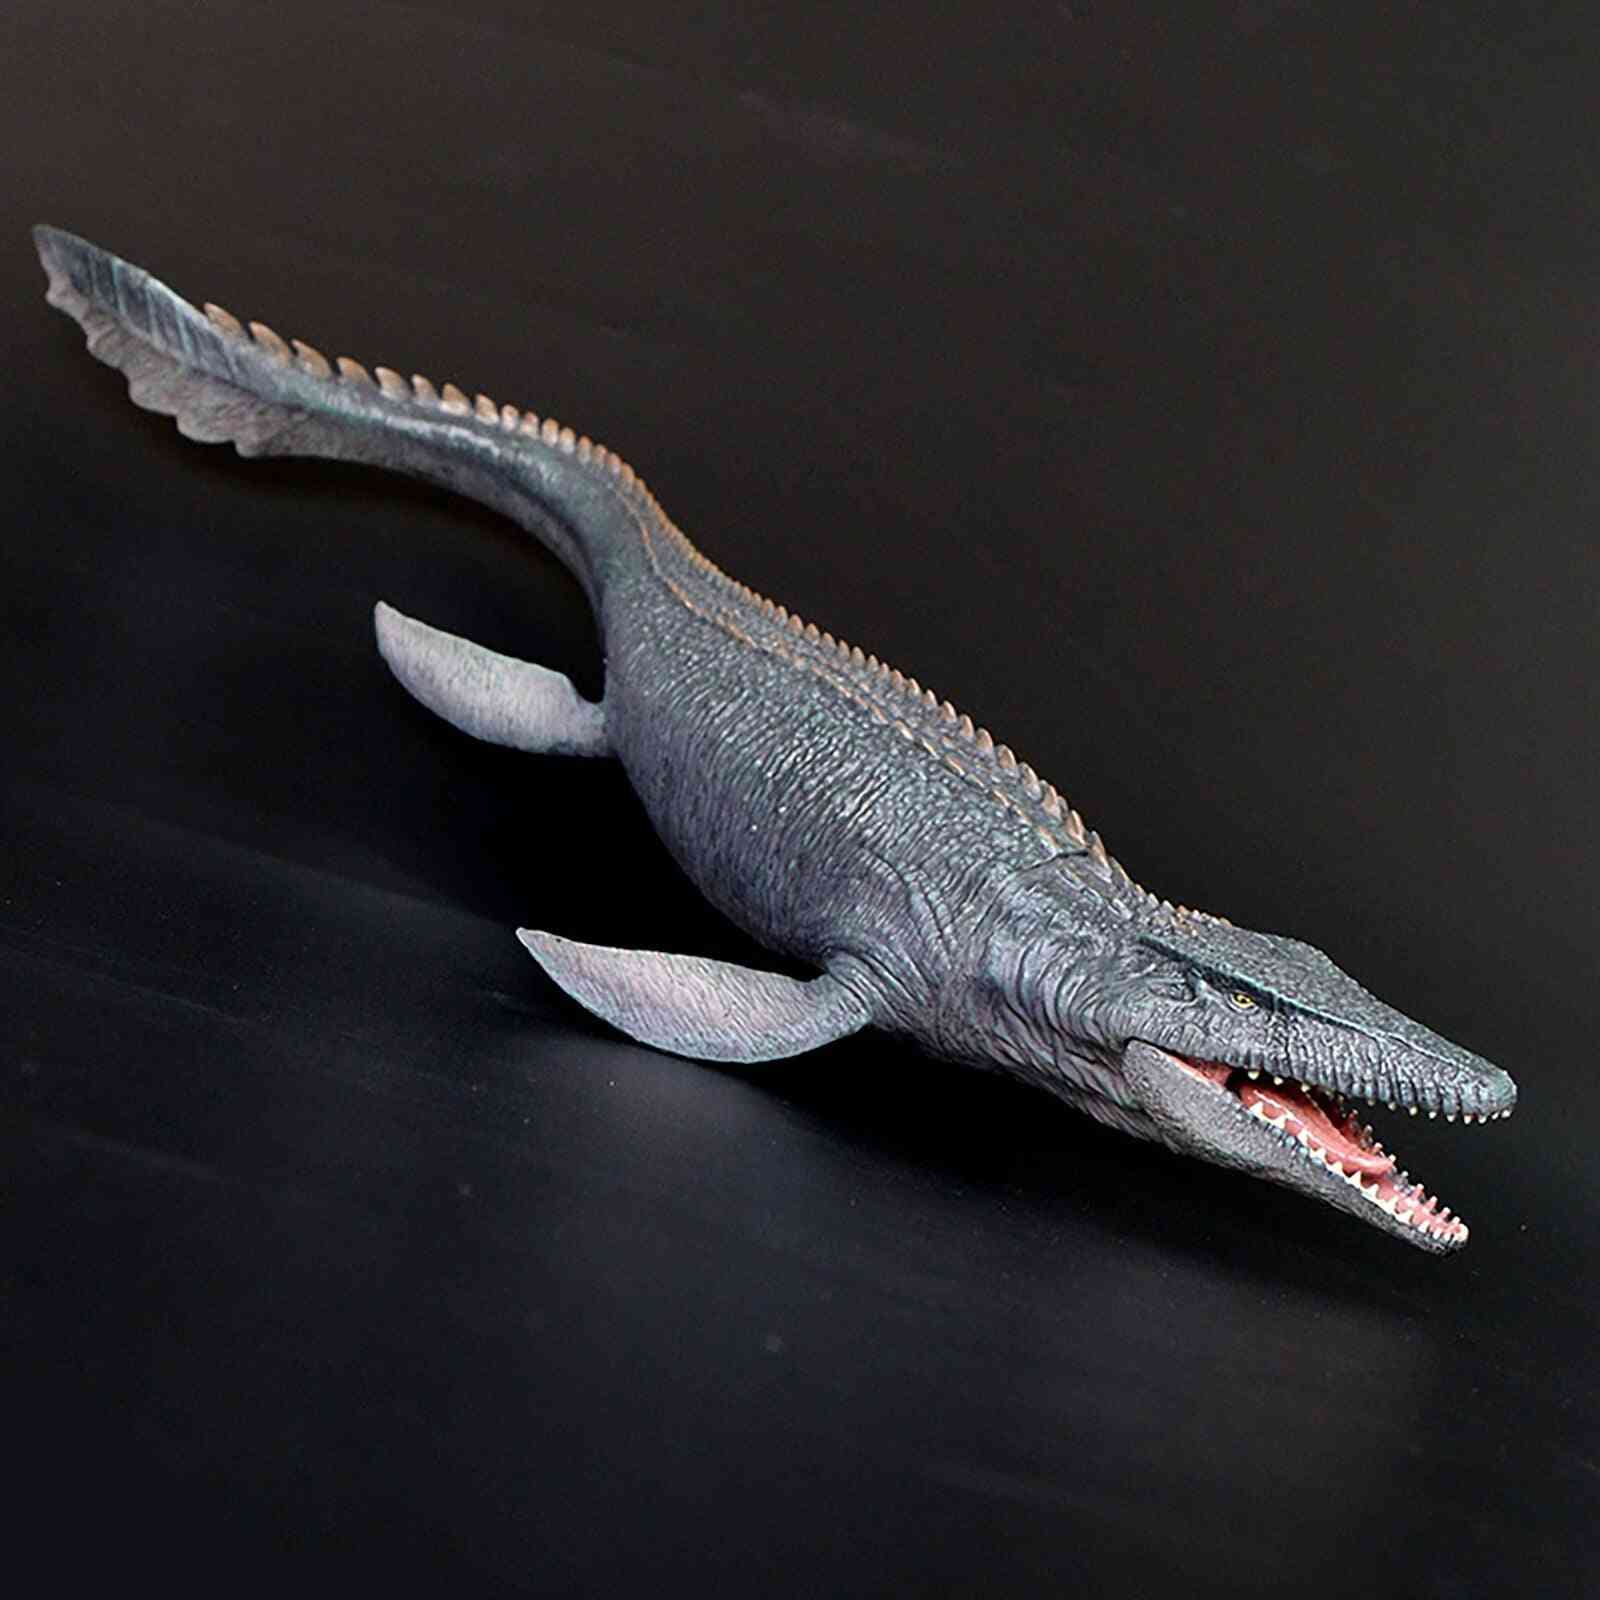 Realistisk stor dinosaur model